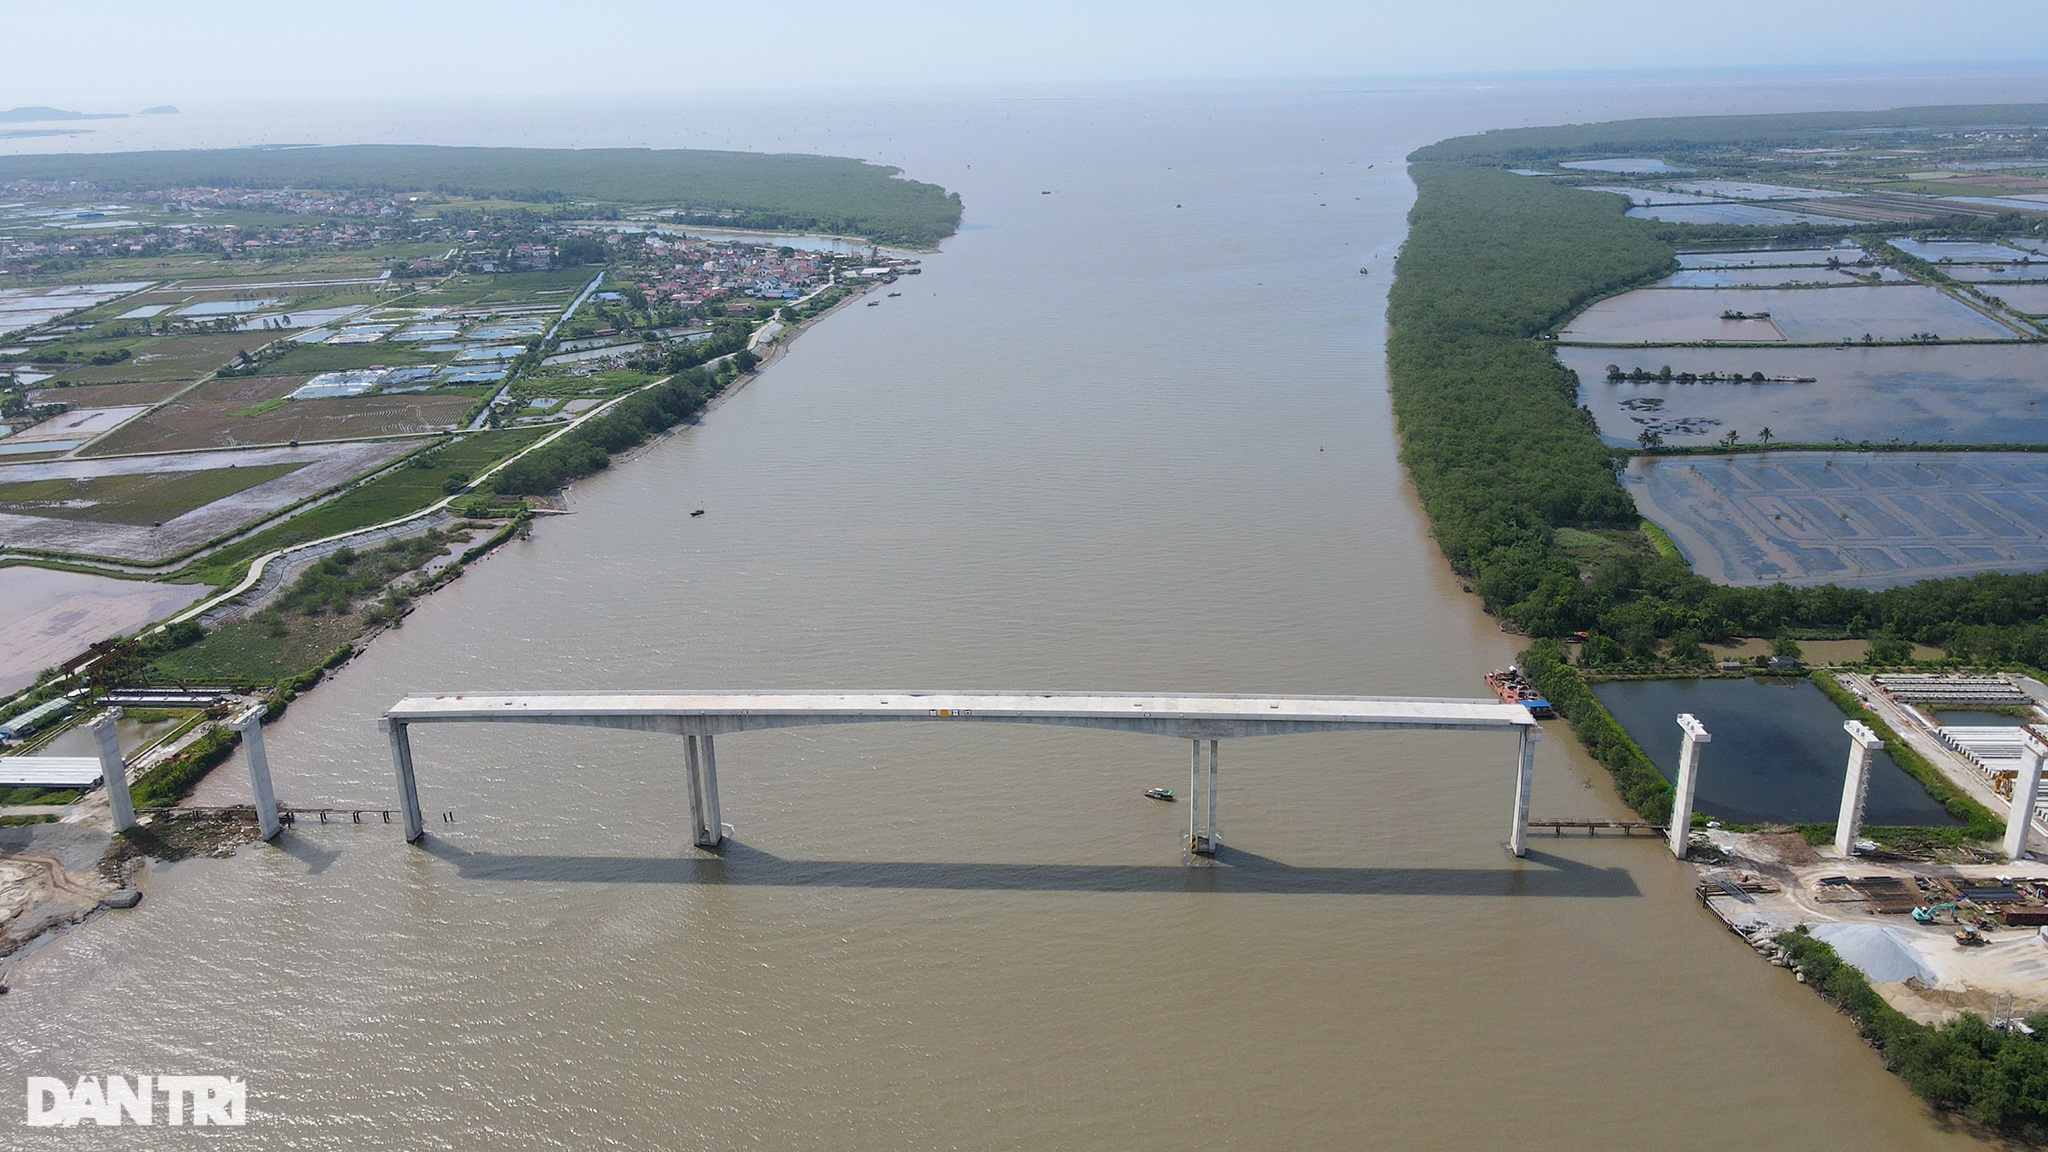 Hợp long 2 nhịp chính giữa cầu Văn Úc hơn 800 tỷ đồng ở cửa biển Hải Phòng - 1